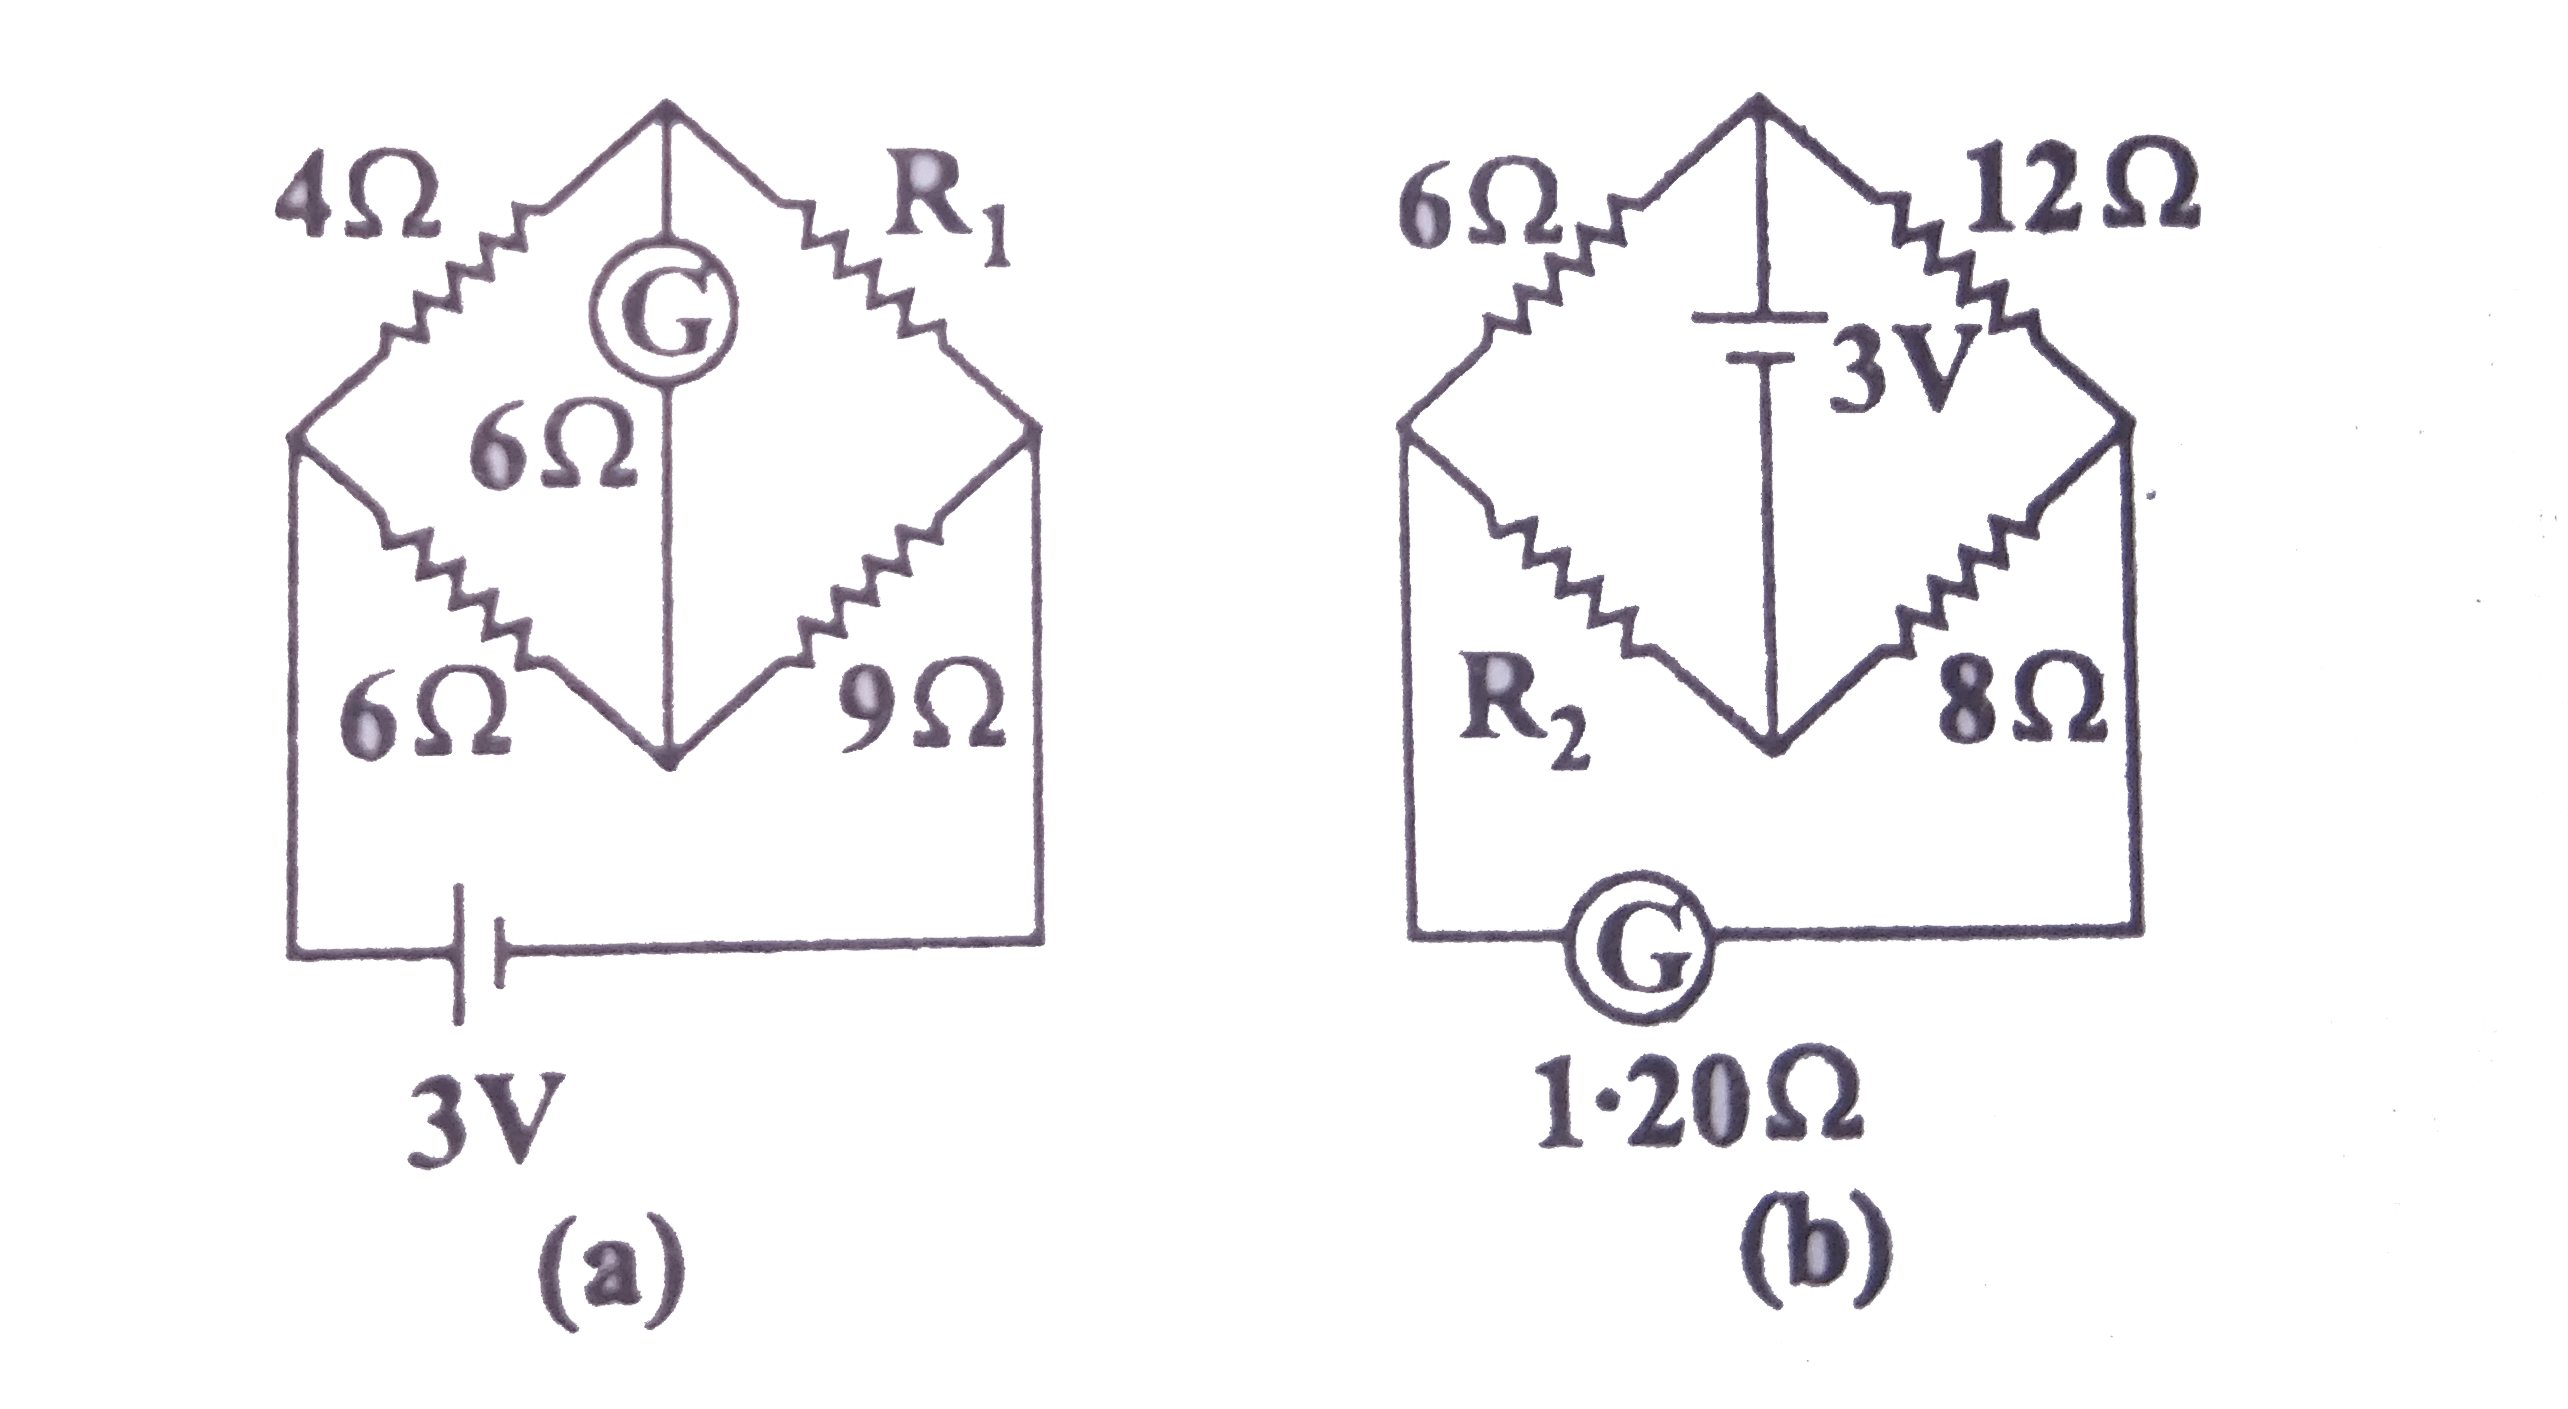 नीचे दो परिपथ प्रदर्शित किय गए है जिनमे से प्रत्येक में एक धारामापी और 3V की बैटरी जुडी है। यदि प्रत्येक व्यवस्था में धारामापी में विक्षेप शून्य हो तो (R(1))/(R(2)) का अनुपात ज्ञात कीजिए।